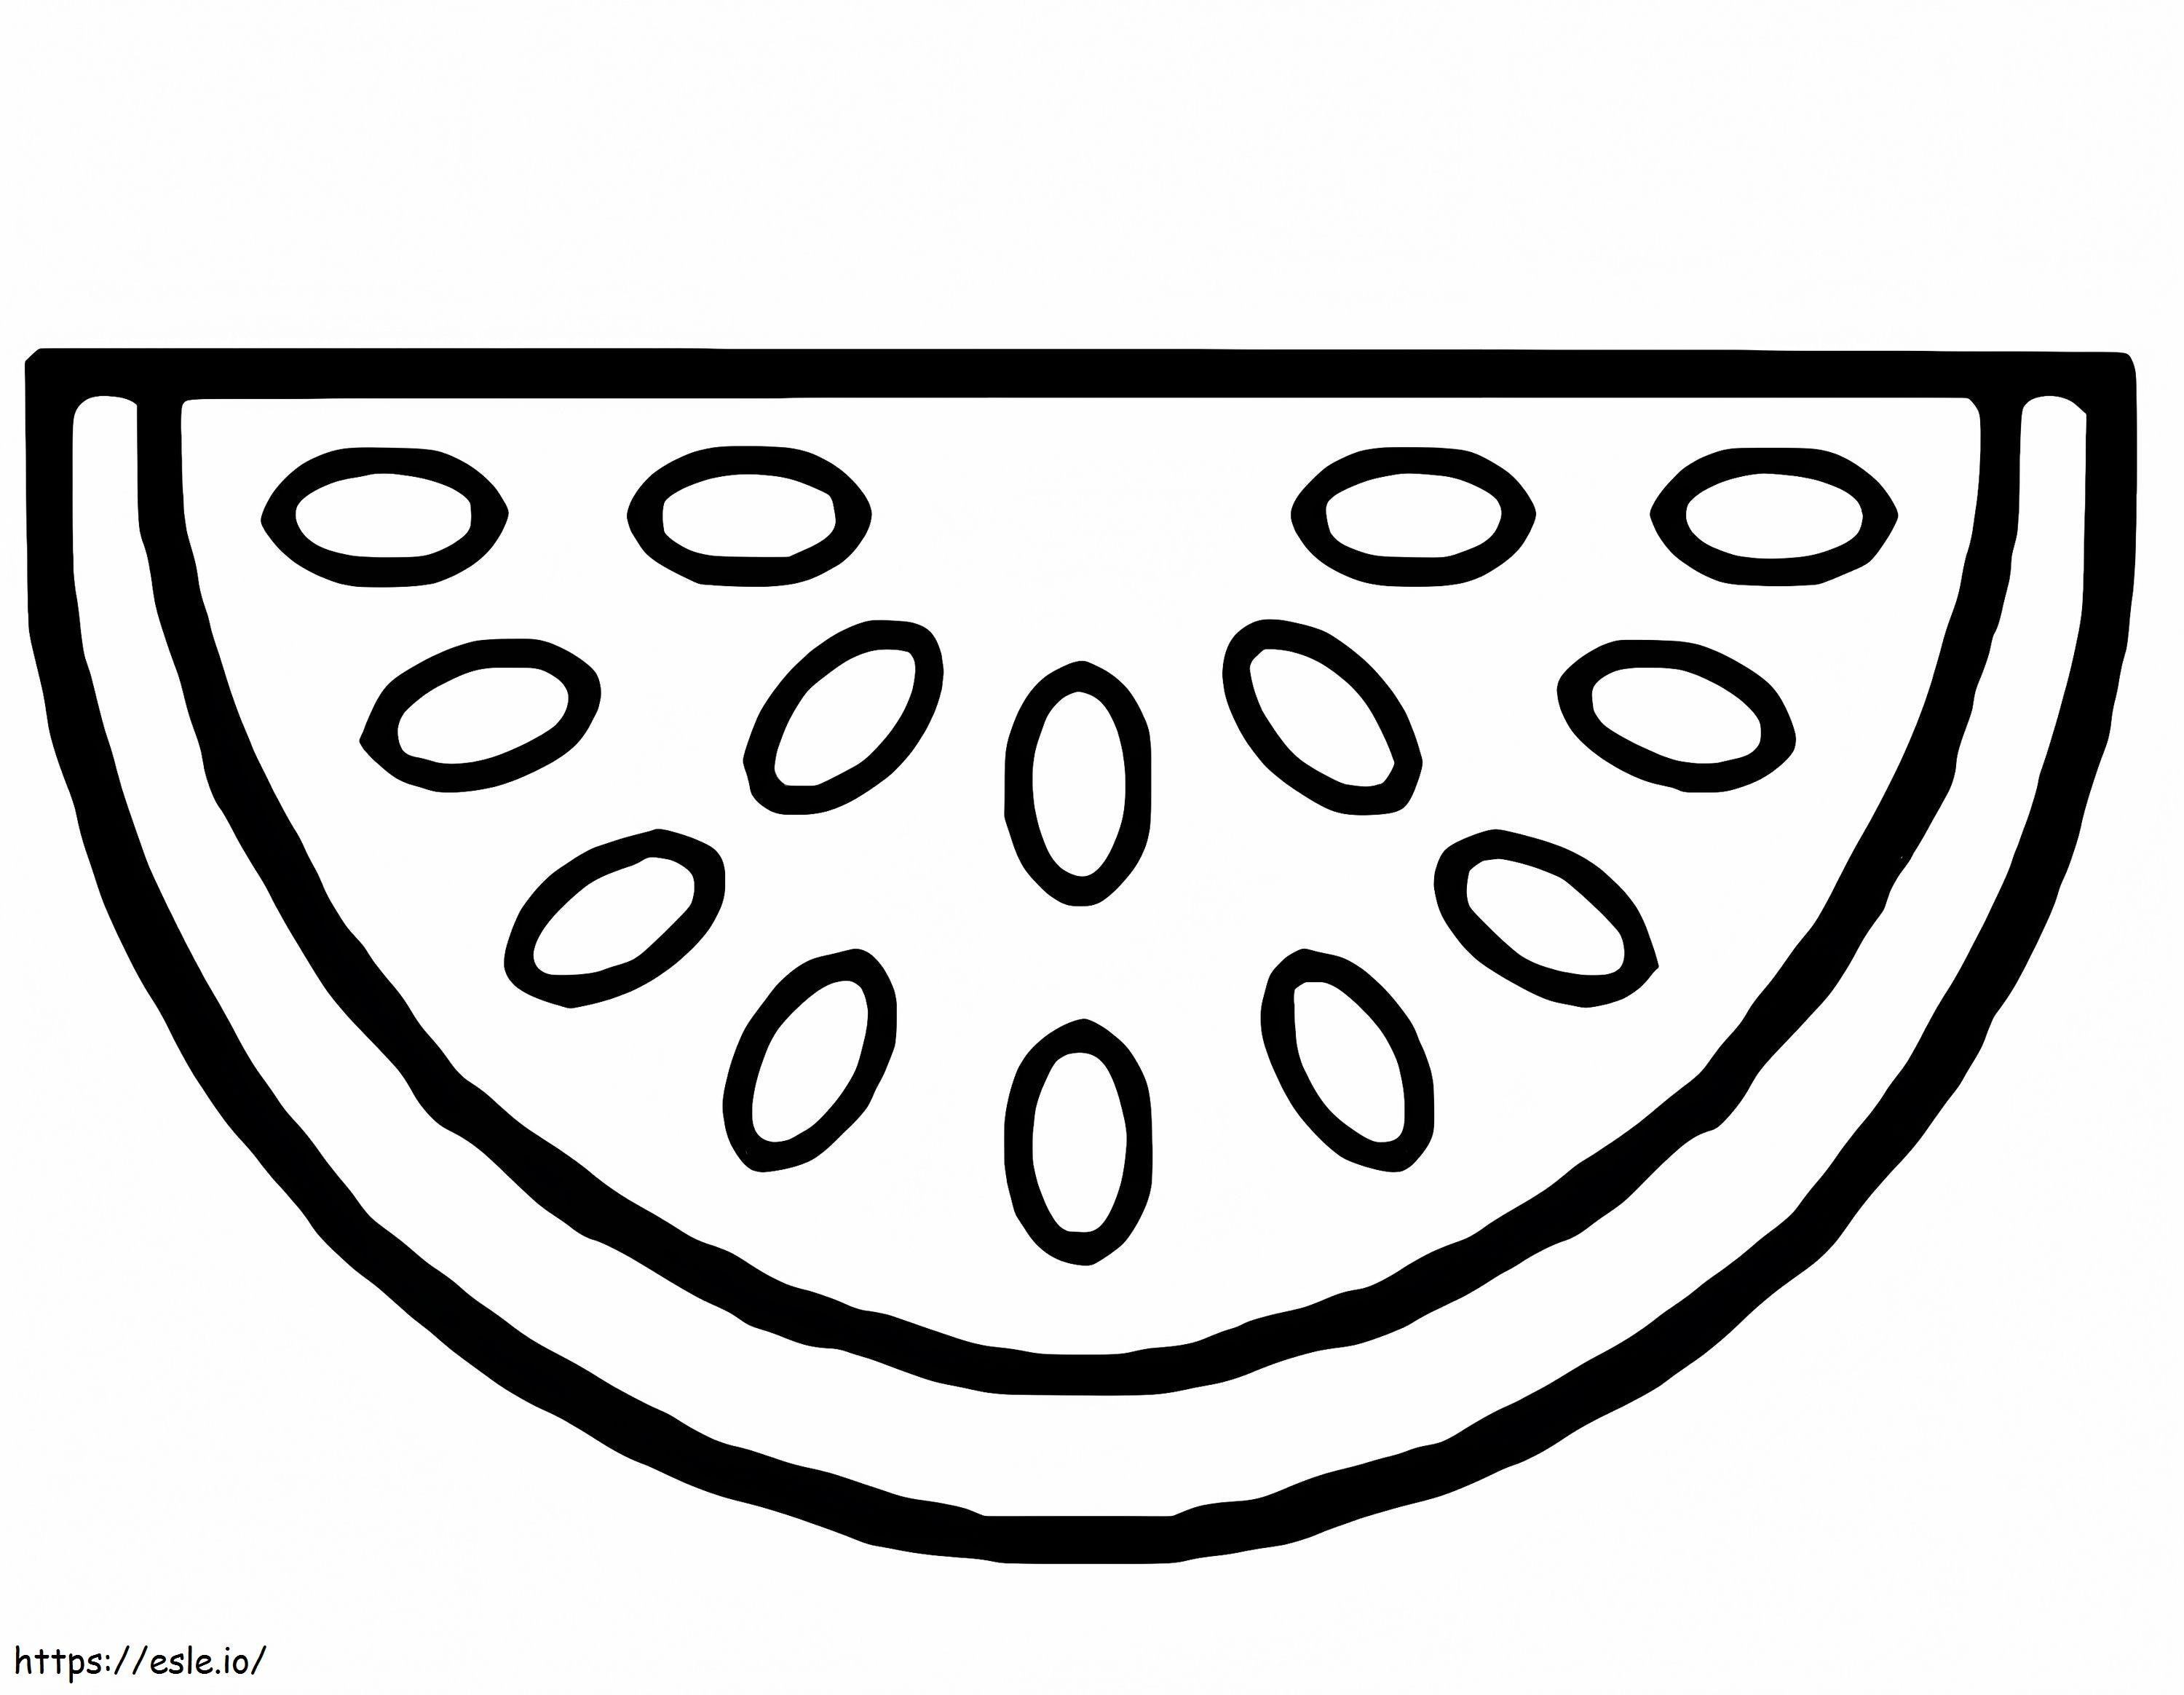 Wassermelonenzeichnung ausmalbilder